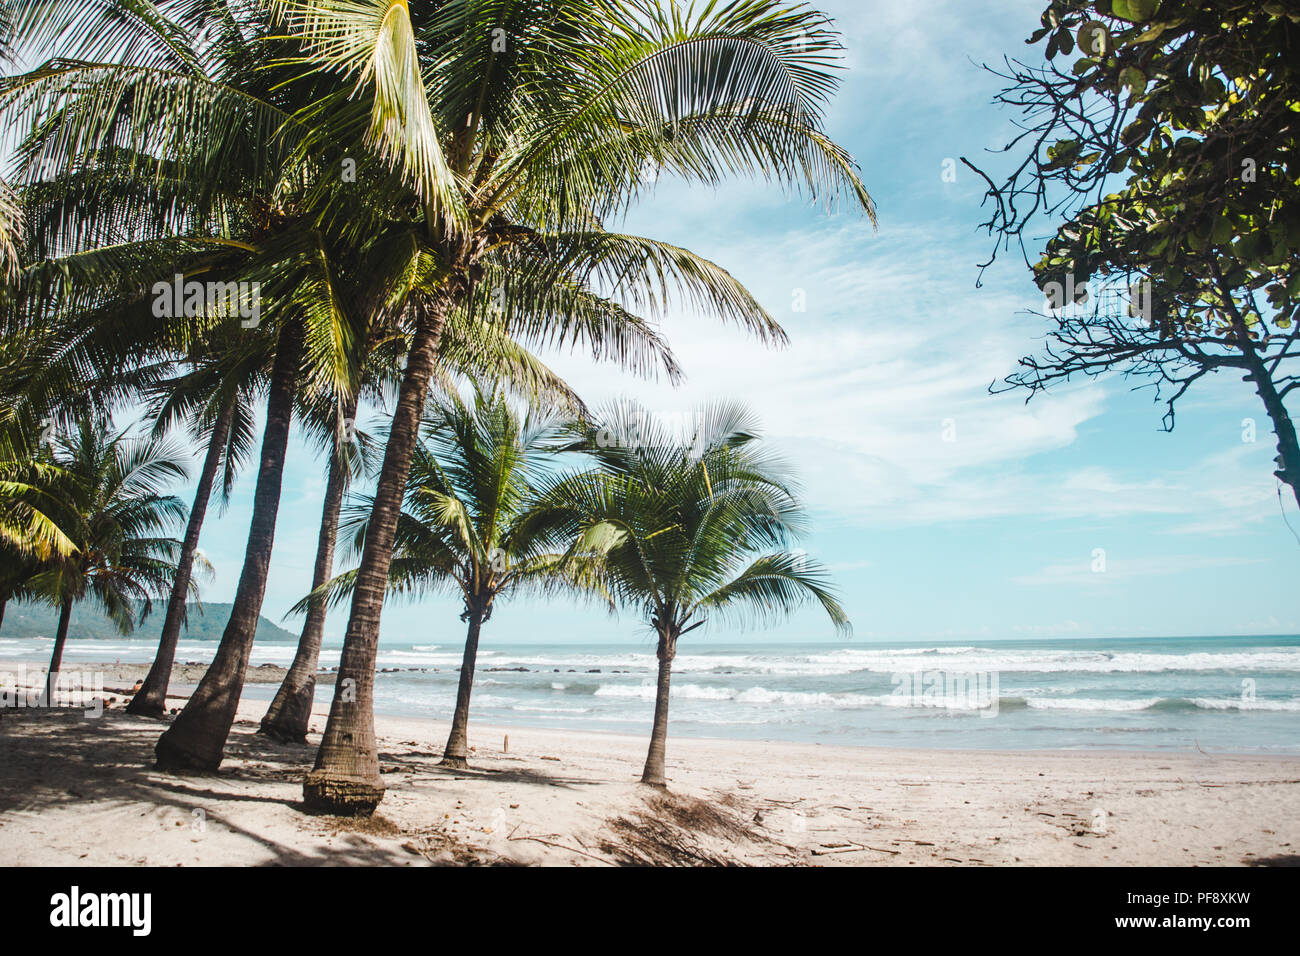 Palmen am Rande der saubere Sandstrand von Playa Carmen, Santa Teresa, Puntaarenas Provinz in Costa Rica an einem heißen Sommertag mit blauem Himmel Stockfoto